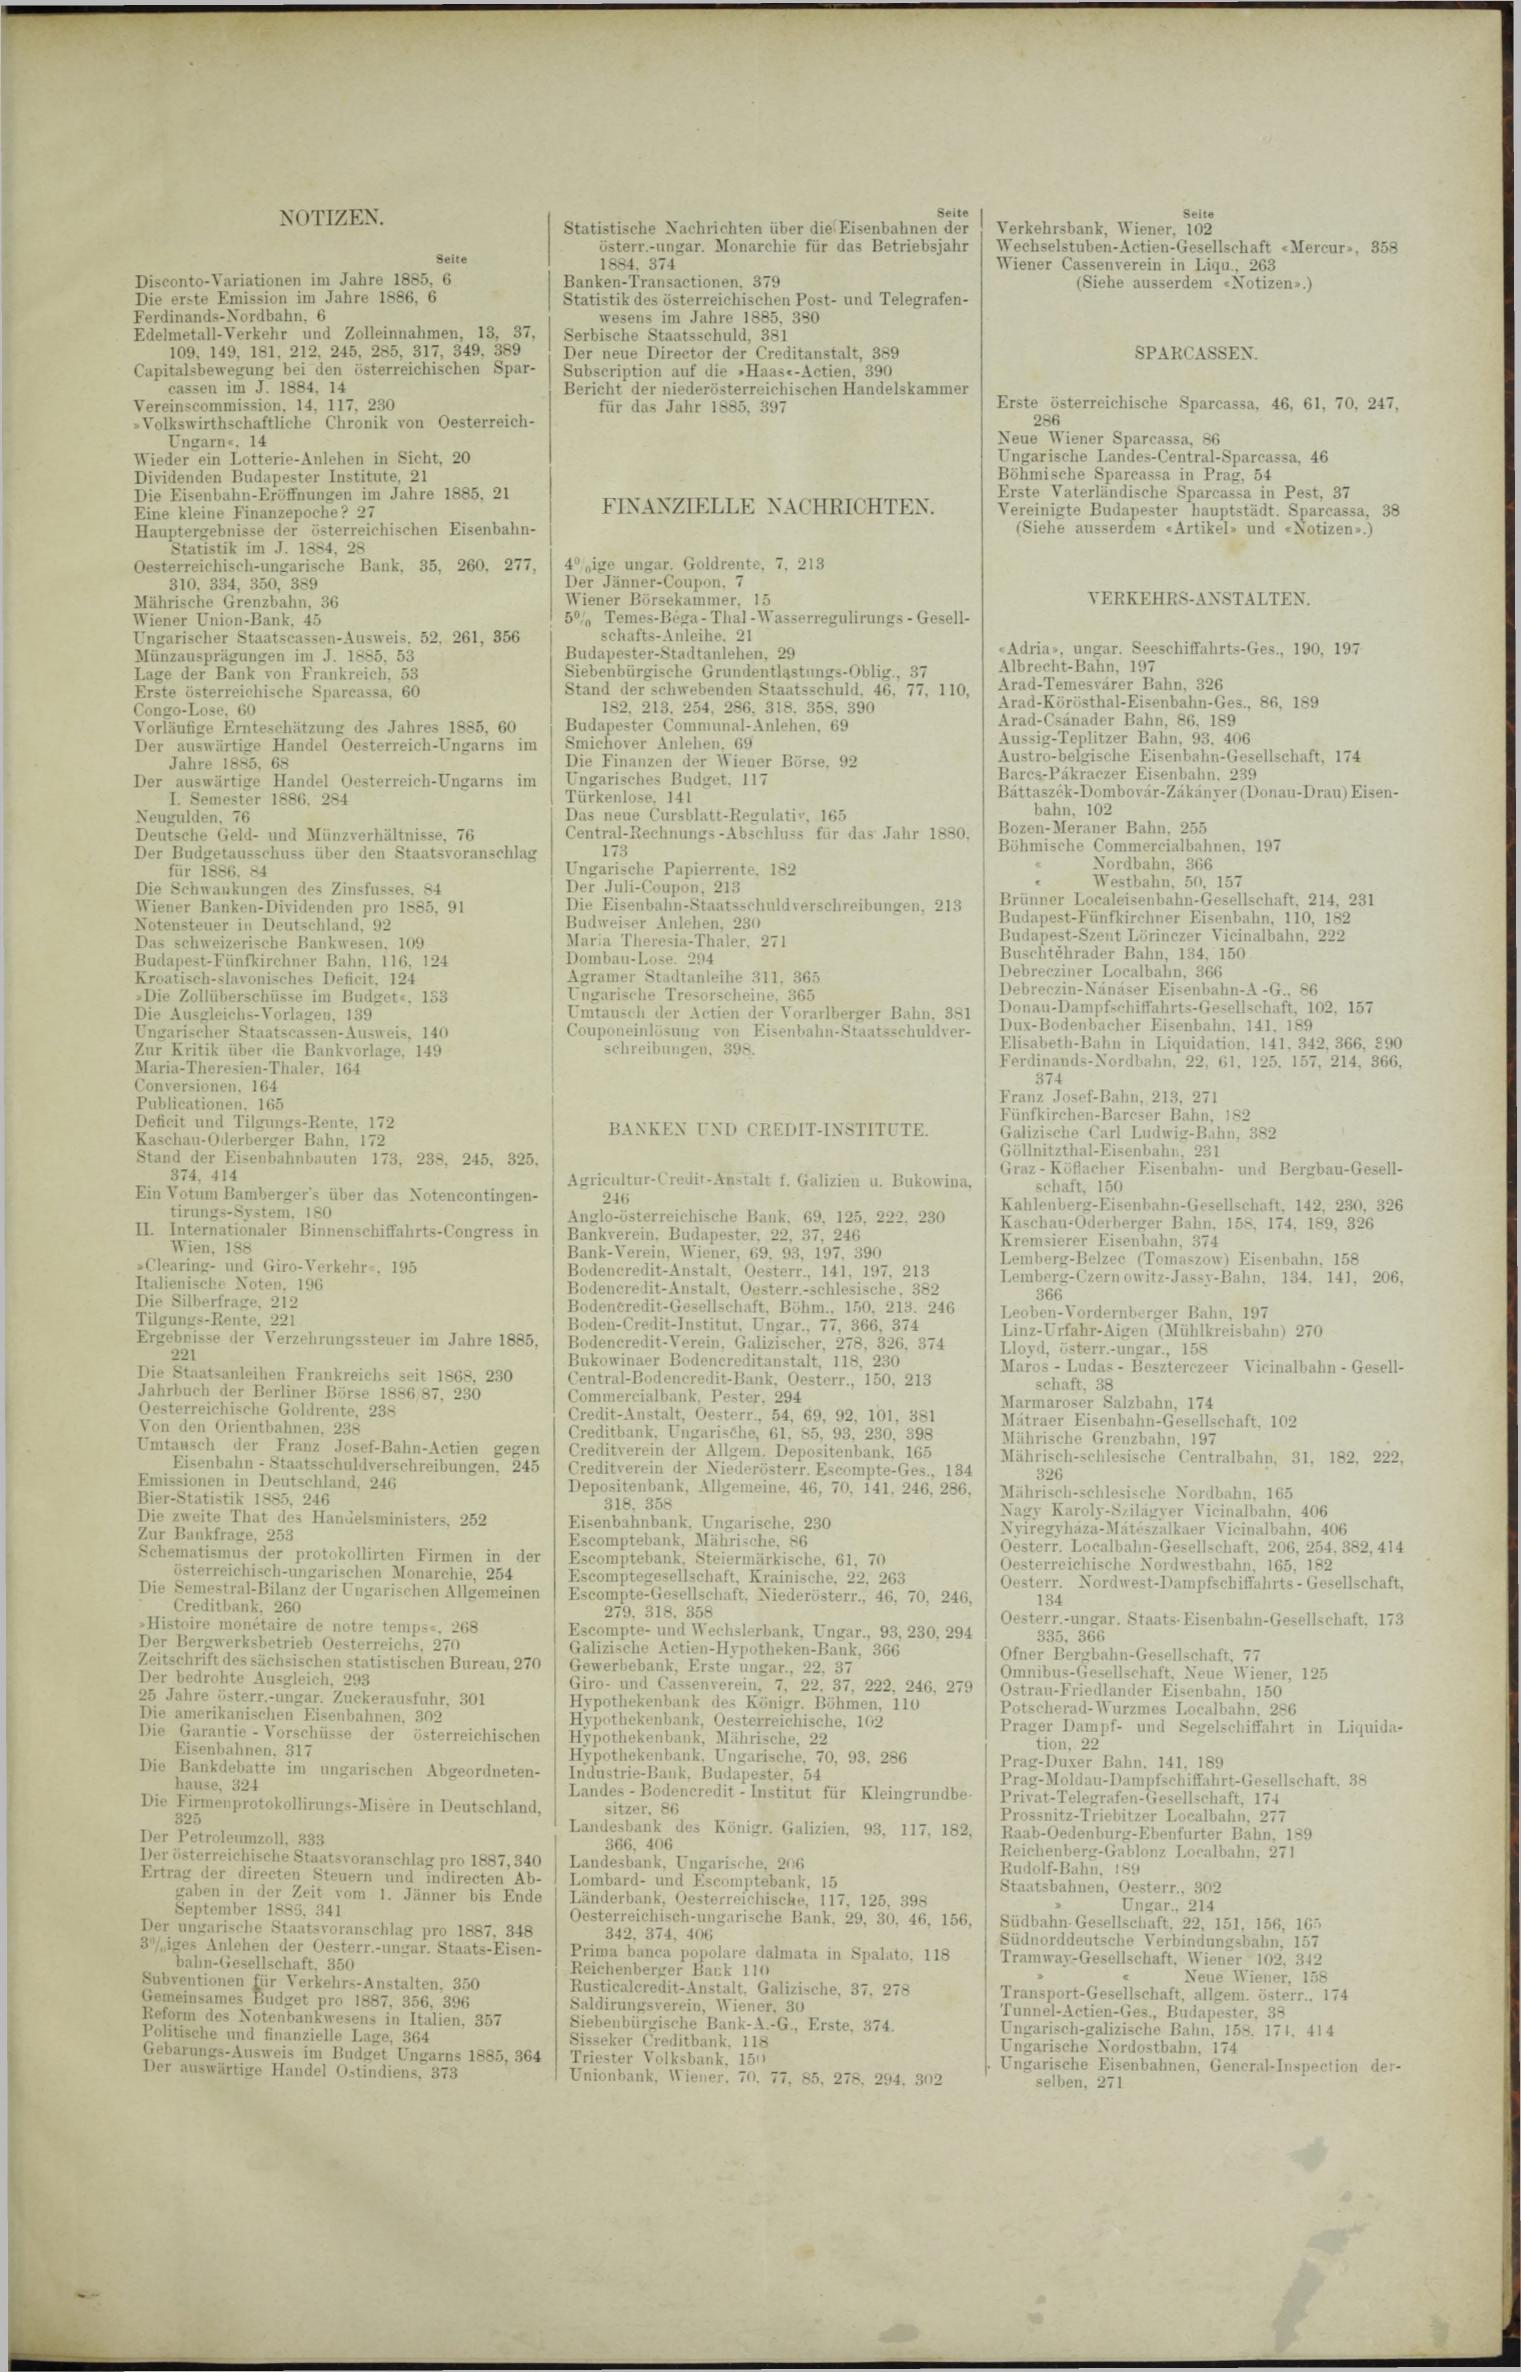 Der Tresor 29.04.1886 - Seite 11